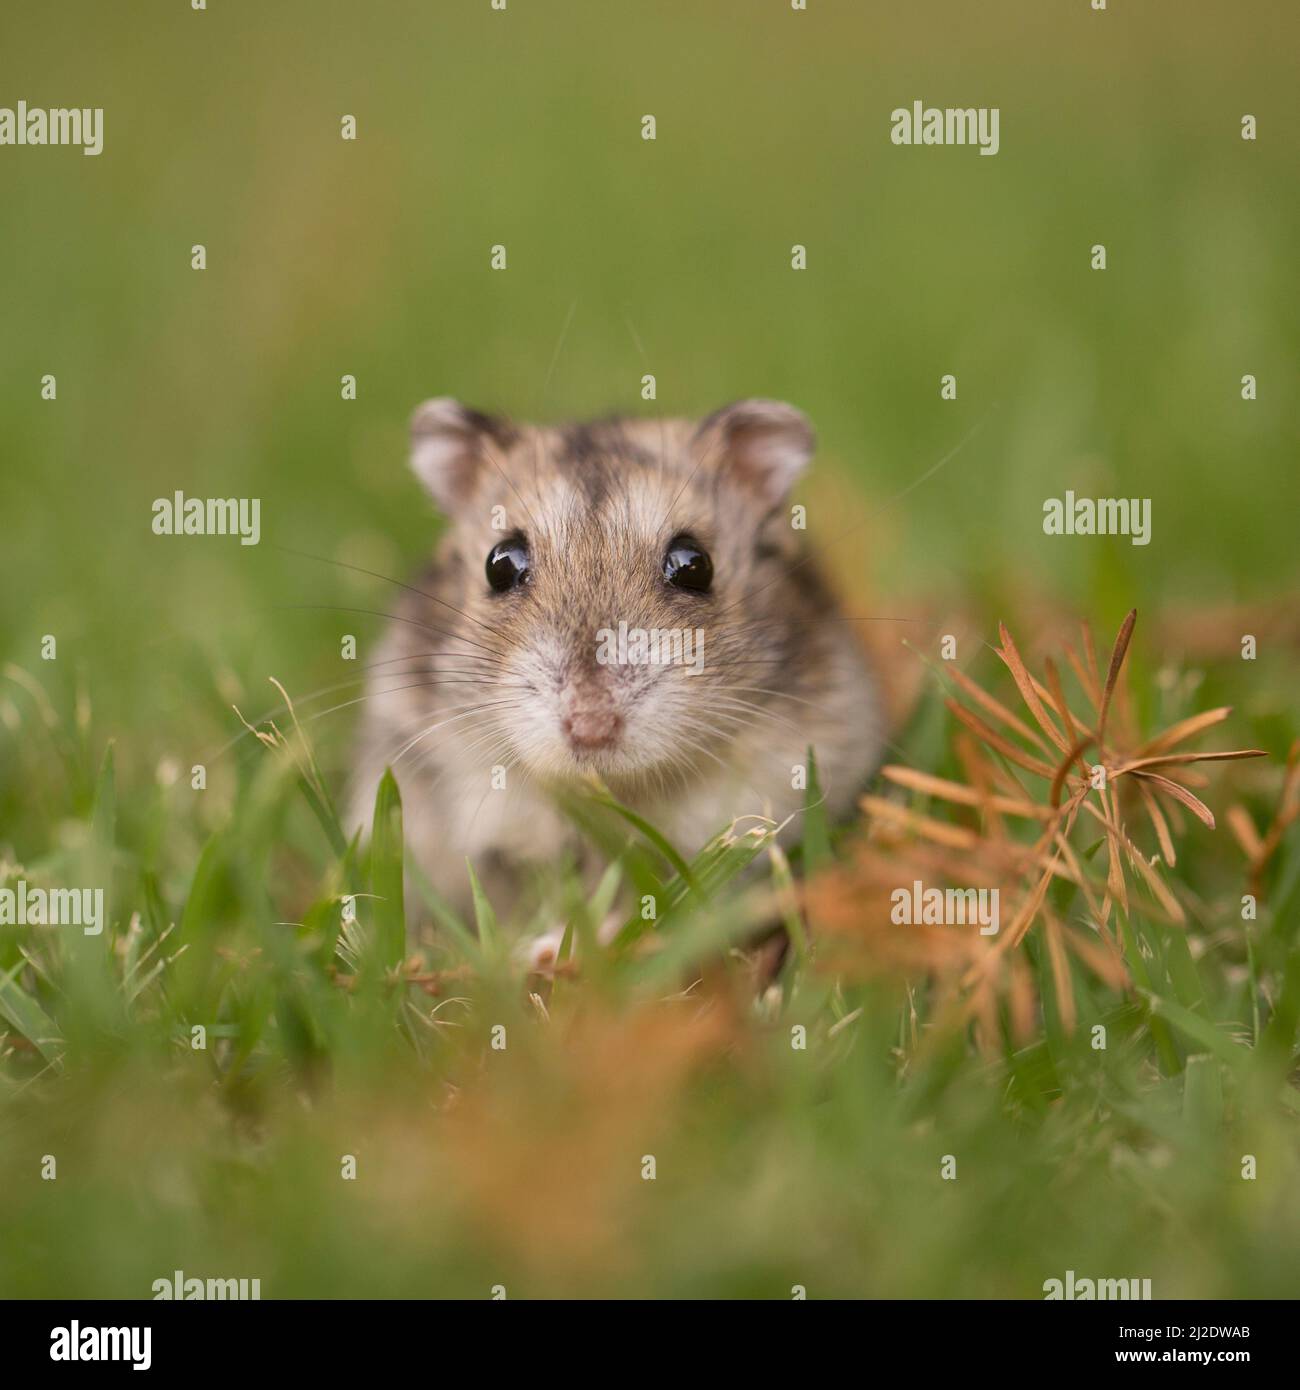 Close up e messa a fuoco selettiva di un Djungarian hamster (Phodopus sungorus), noto anche come il Siberiano criceto, sul prato. Fotografato in Israele nel luglio Foto Stock